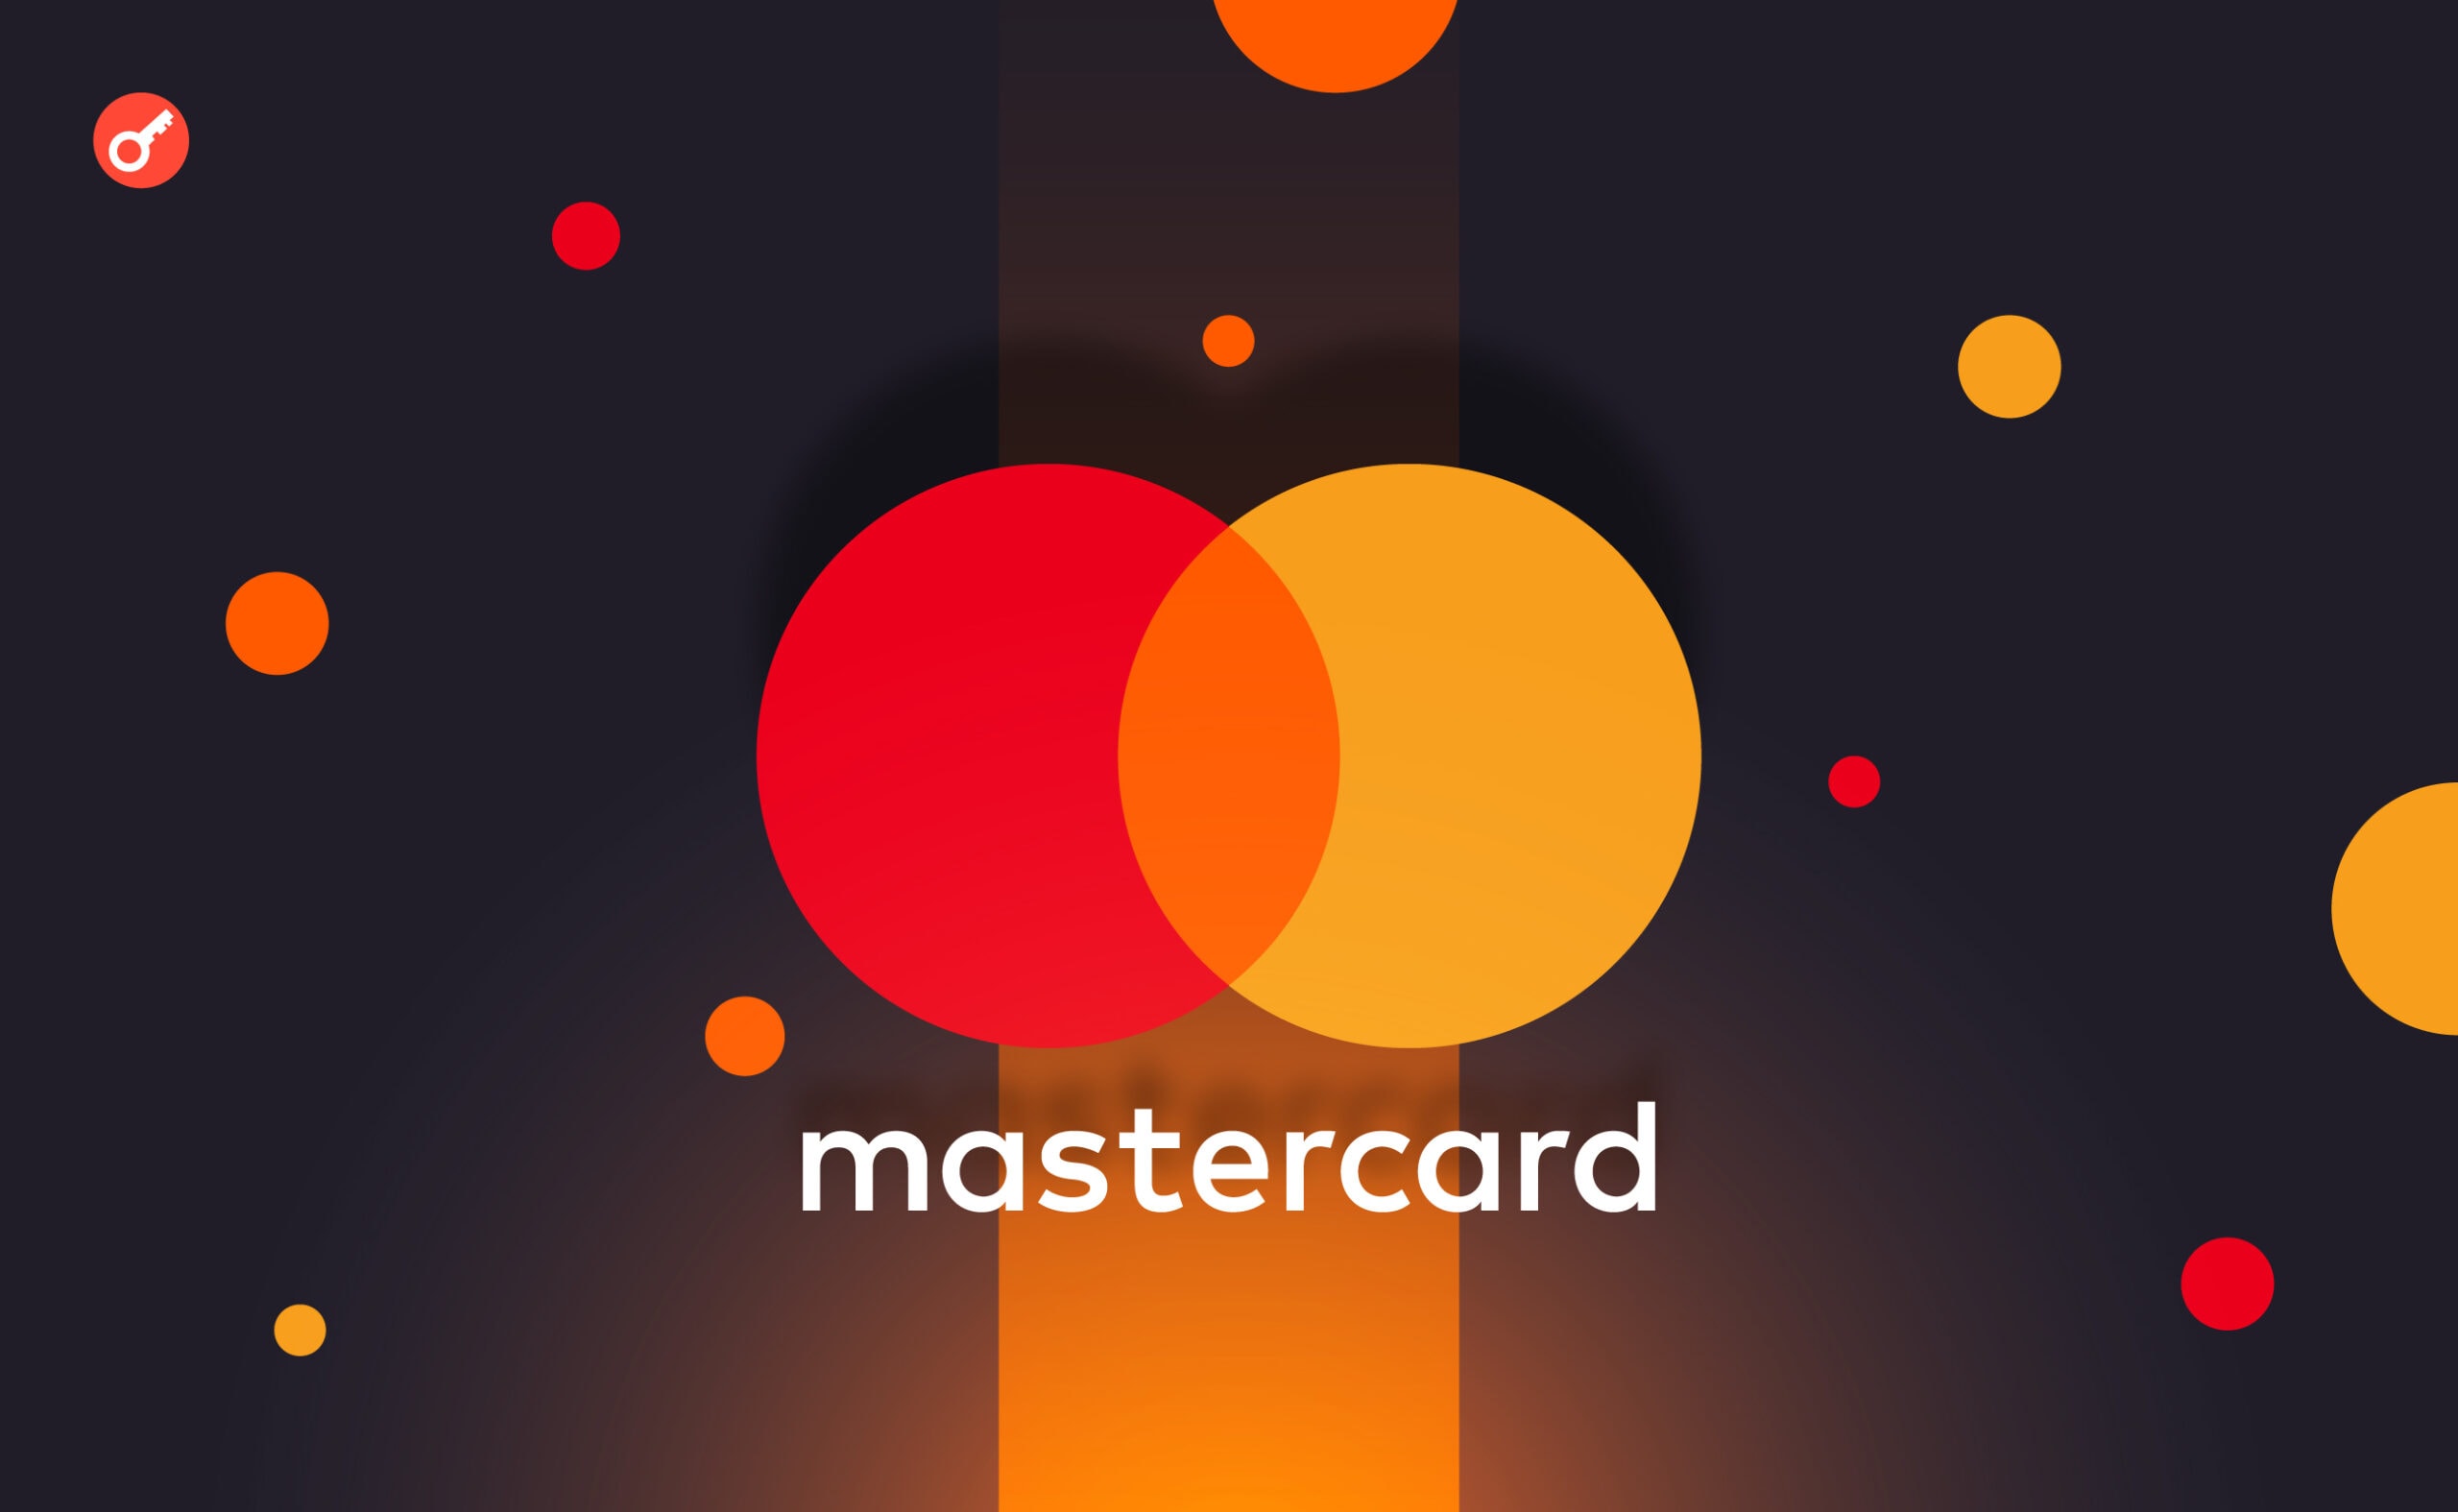 Mastercard застосовує ШІ для боротьби з шахрайством. Головний колаж новини.